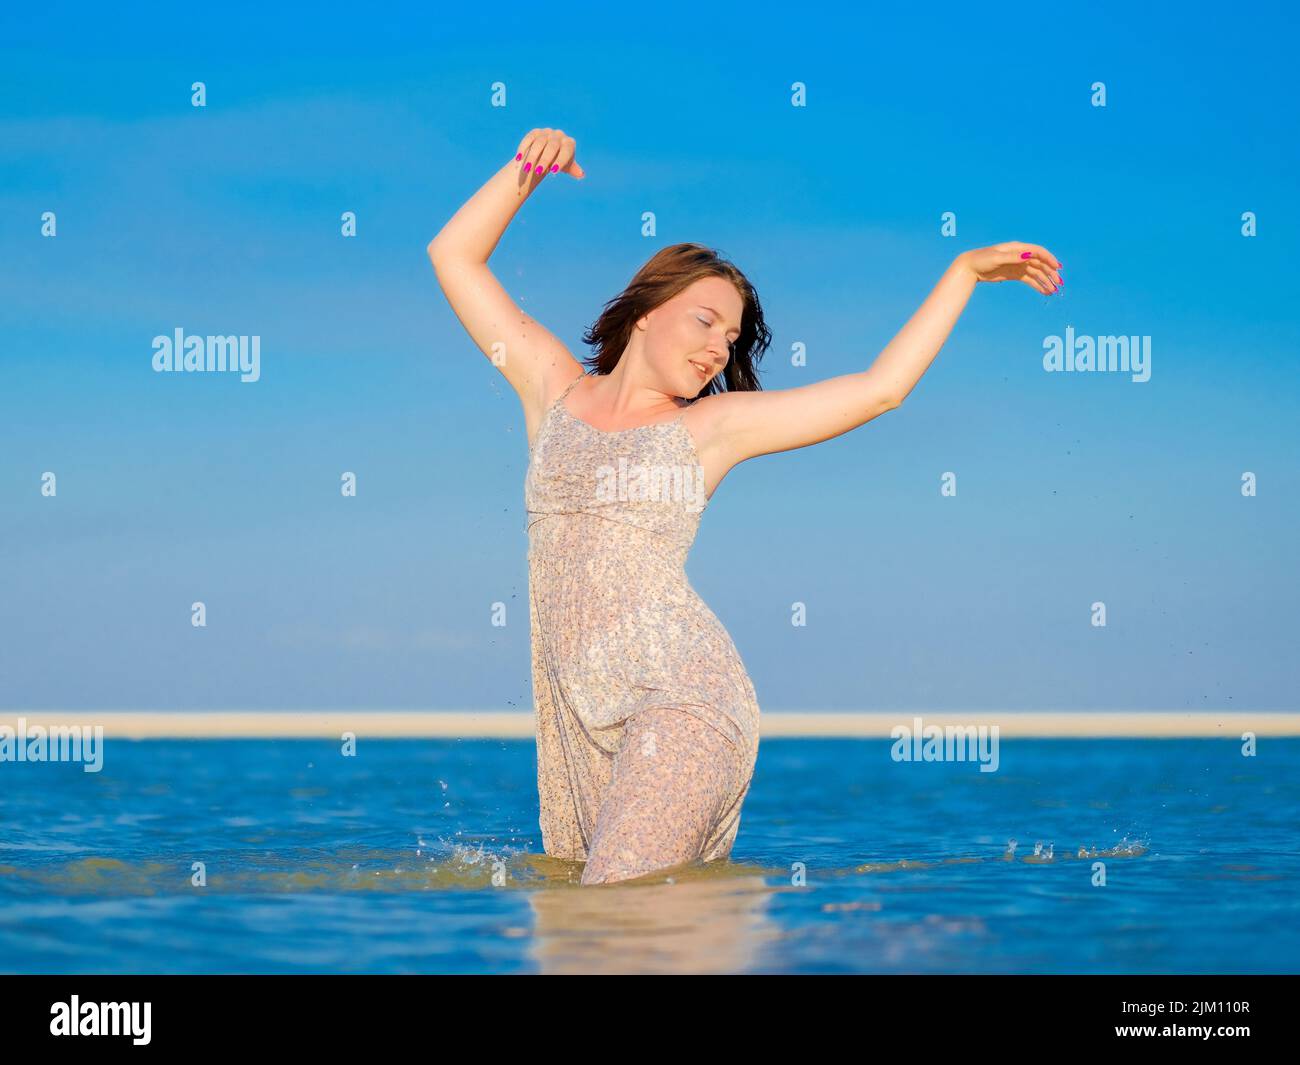 Una giovane donna in una sundress bagnata gode di spruzzi d'acqua mentre sta in piedi in profondità ginocchio nel mare. Foto Stock